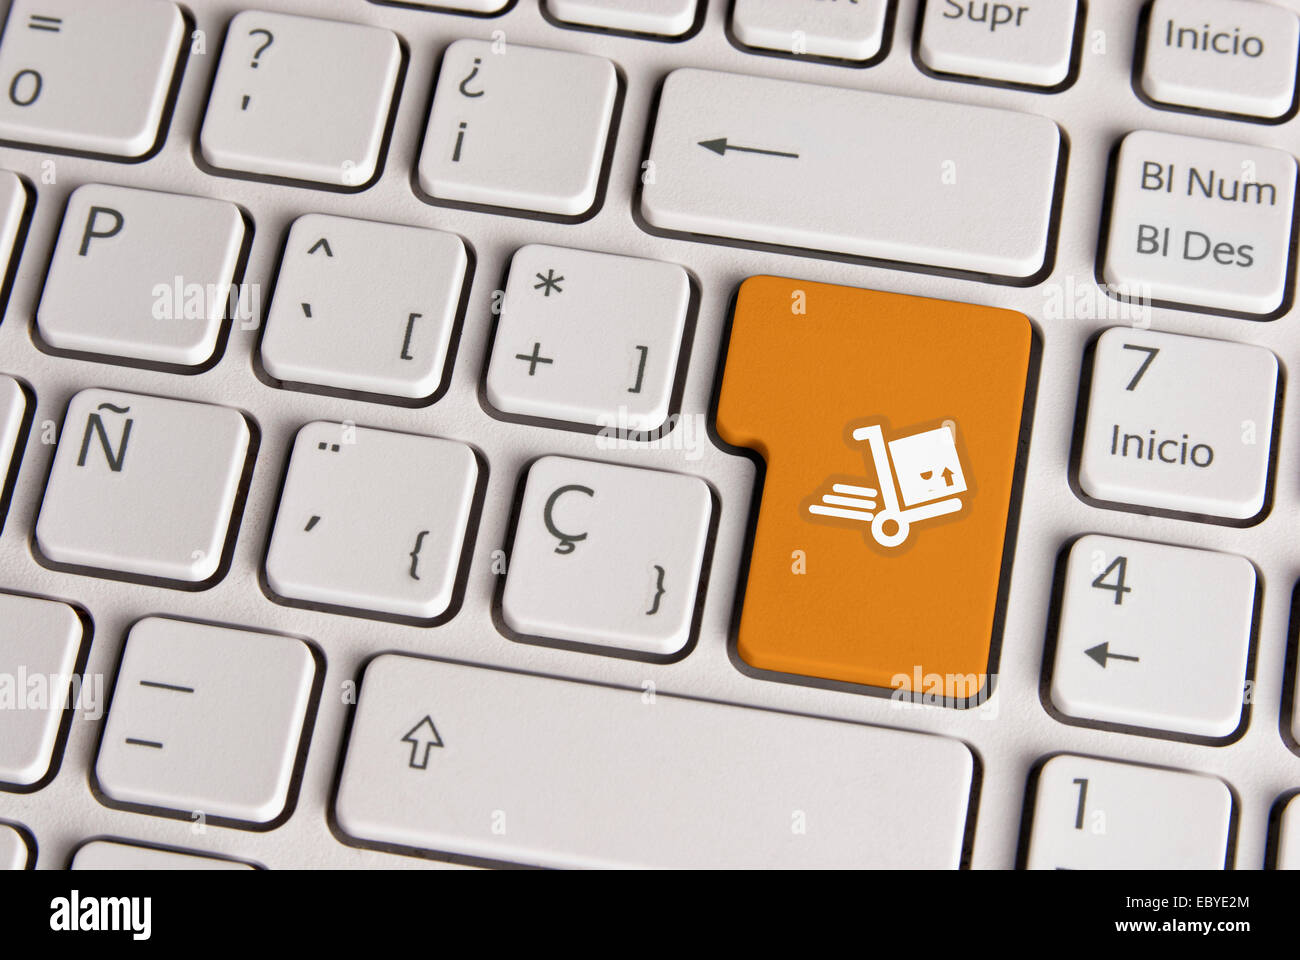 Spanische Tastatur mit Lieferung Versand Warenkorb-Icon über Schaltfläche "Goldgrund". Bild mit Beschneidungspfad für einfachen Wechsel der Schlüssel Stockfoto